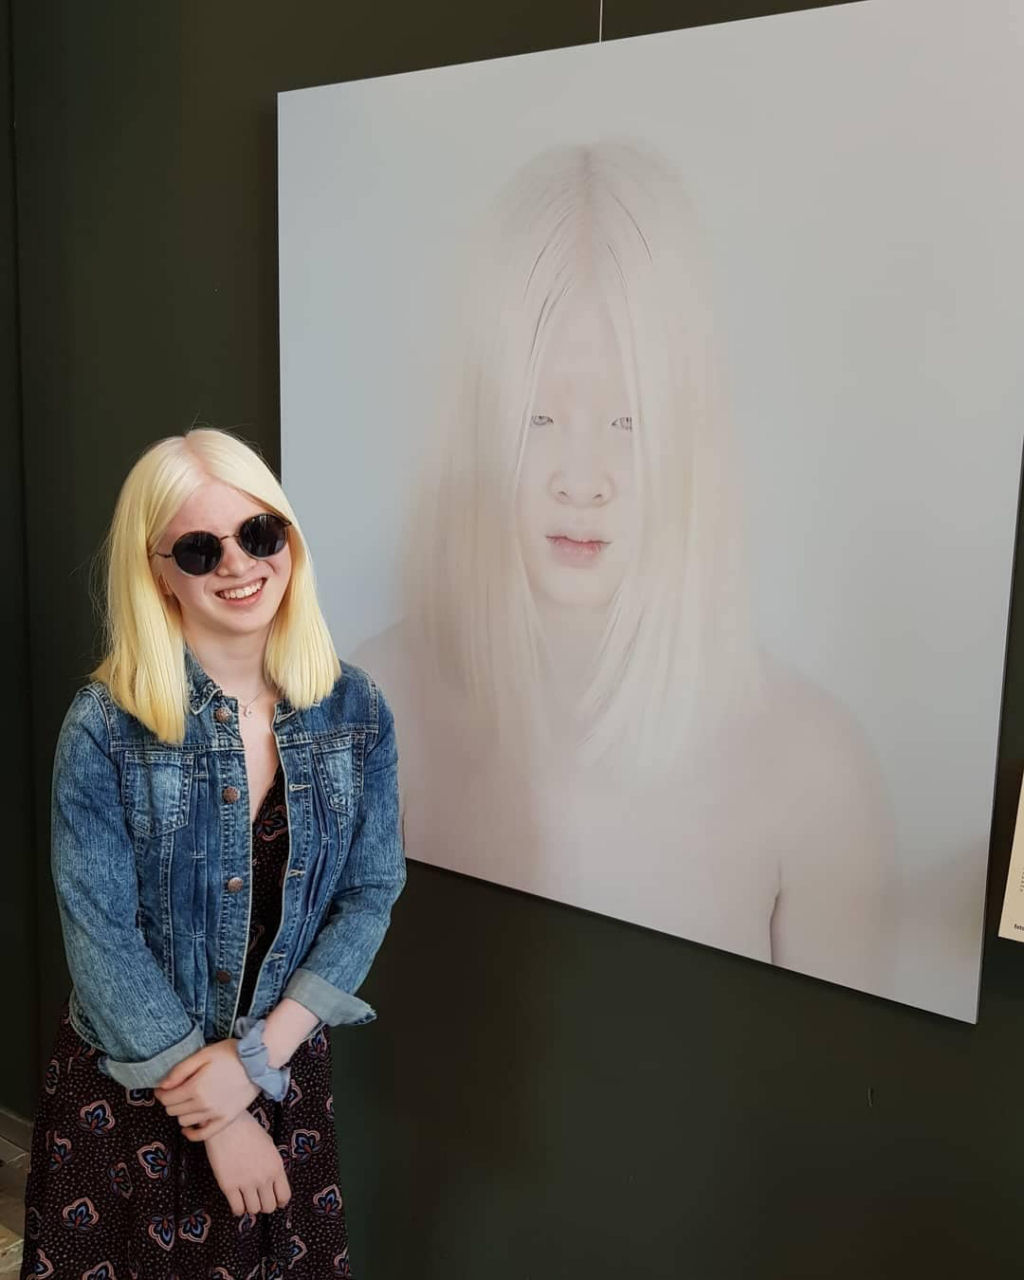 Garota albina abandonada quando criança se tornou modelo da Vogue